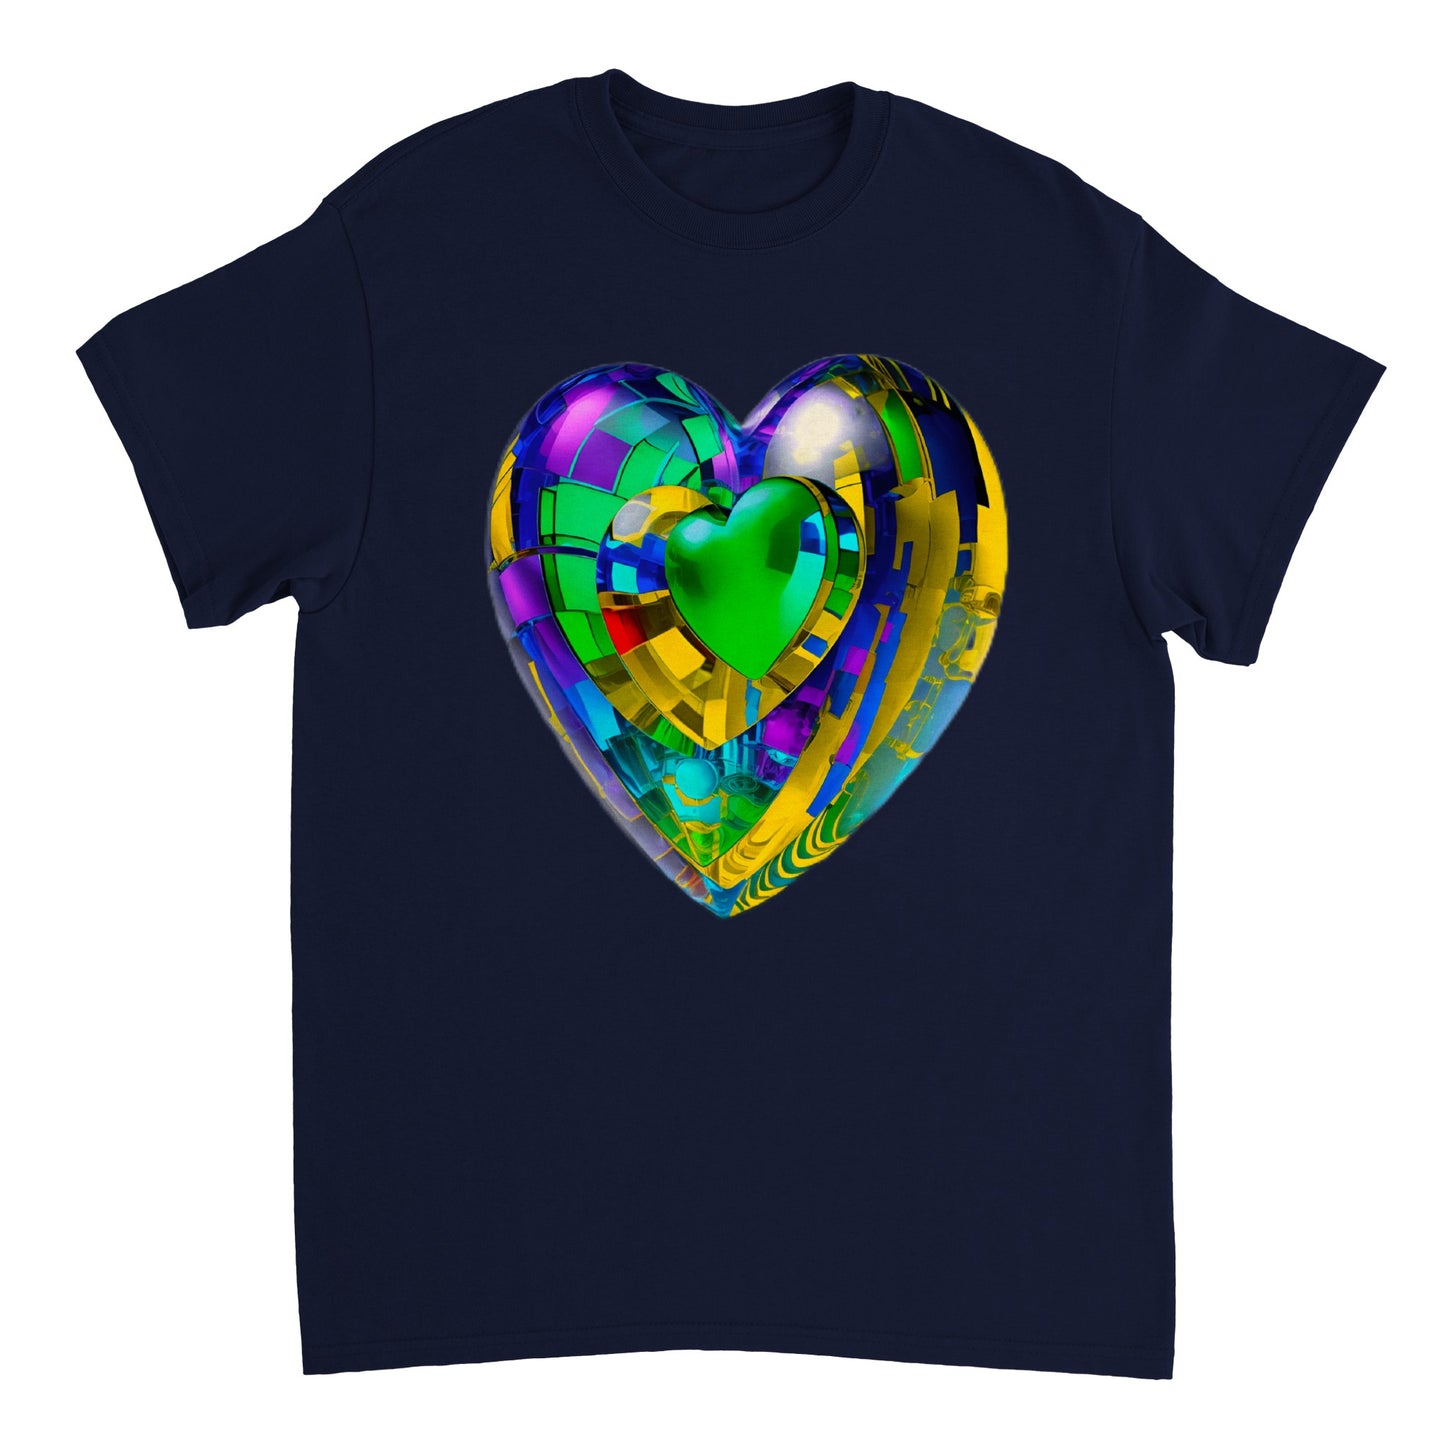 Love Heart - Heavyweight Unisex Crewneck T-shirt 32